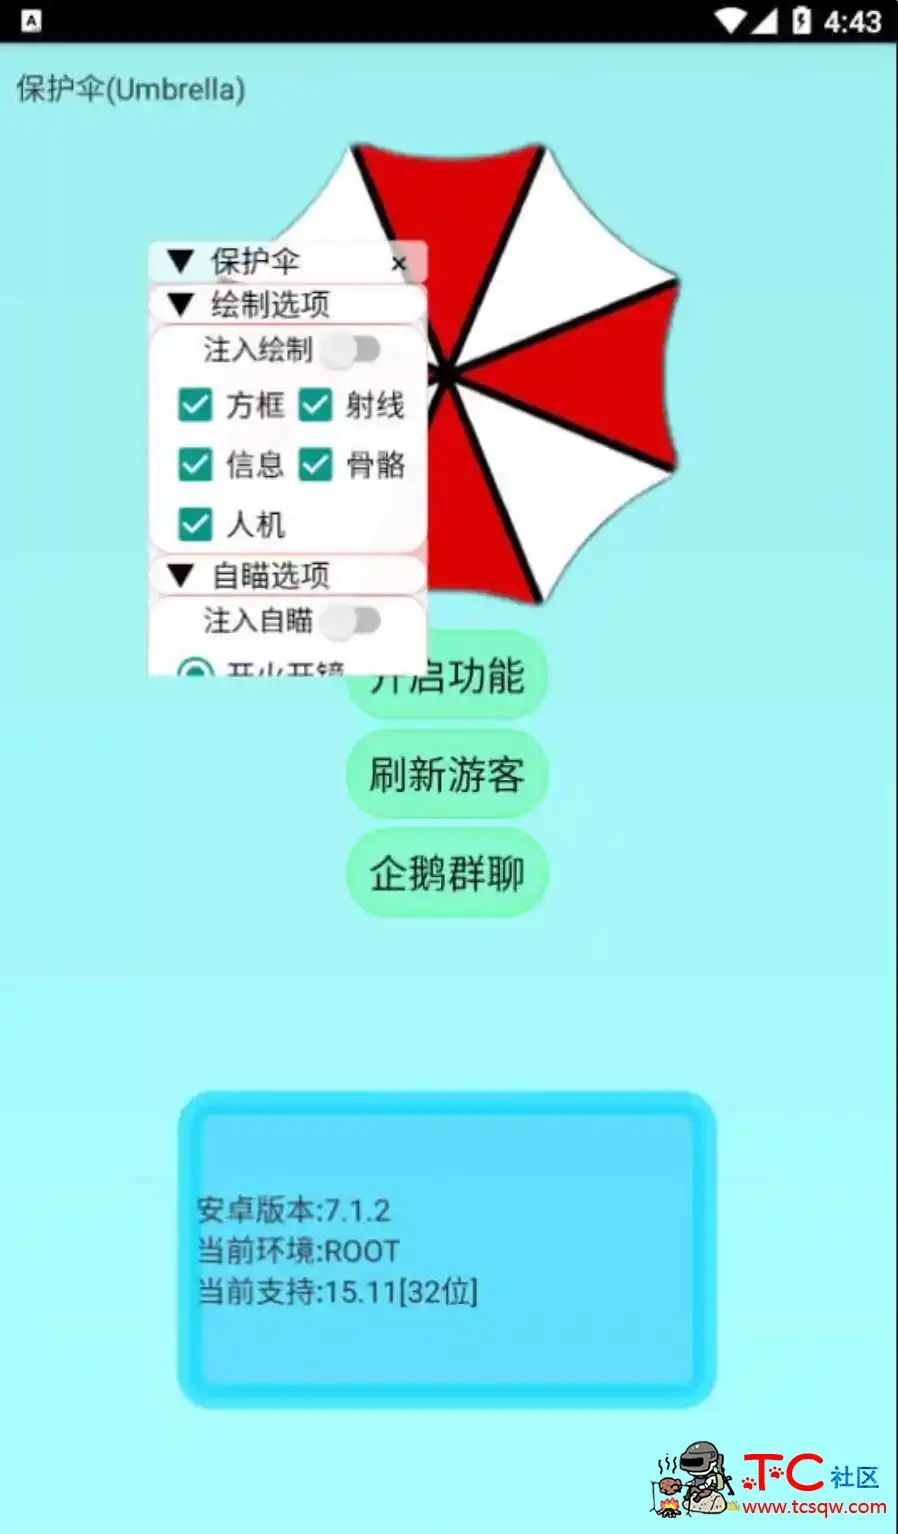 香肠派对保护伞绘制自瞄无后多功能插件 屠城辅助网www.tcfz1.com7842